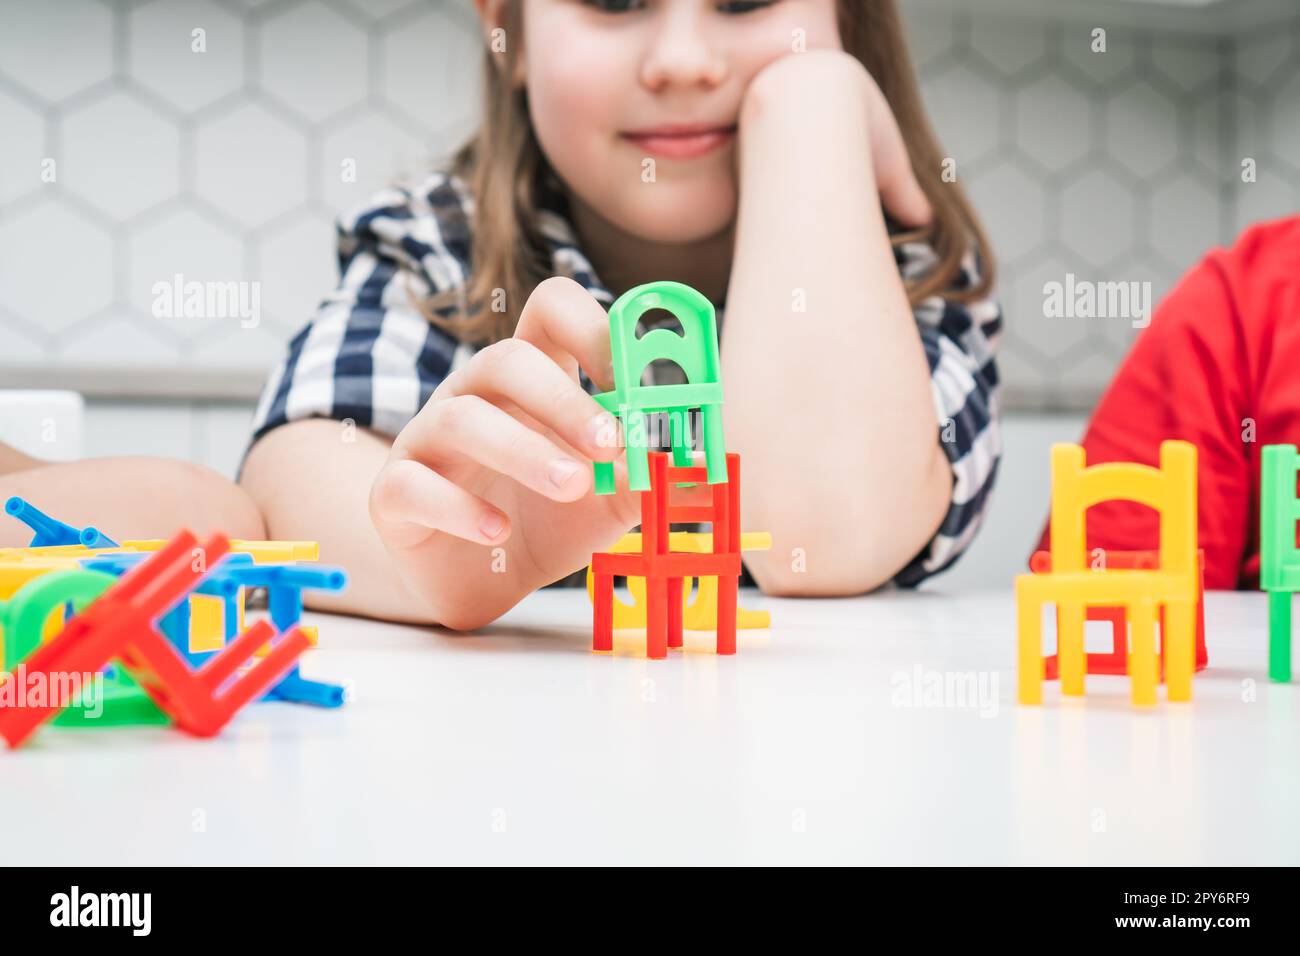 Petite école fille jouer jouet chaises colorées assis à la table près. Portrait d'un enfant tenant de petits meubles en plastique. Banque D'Images